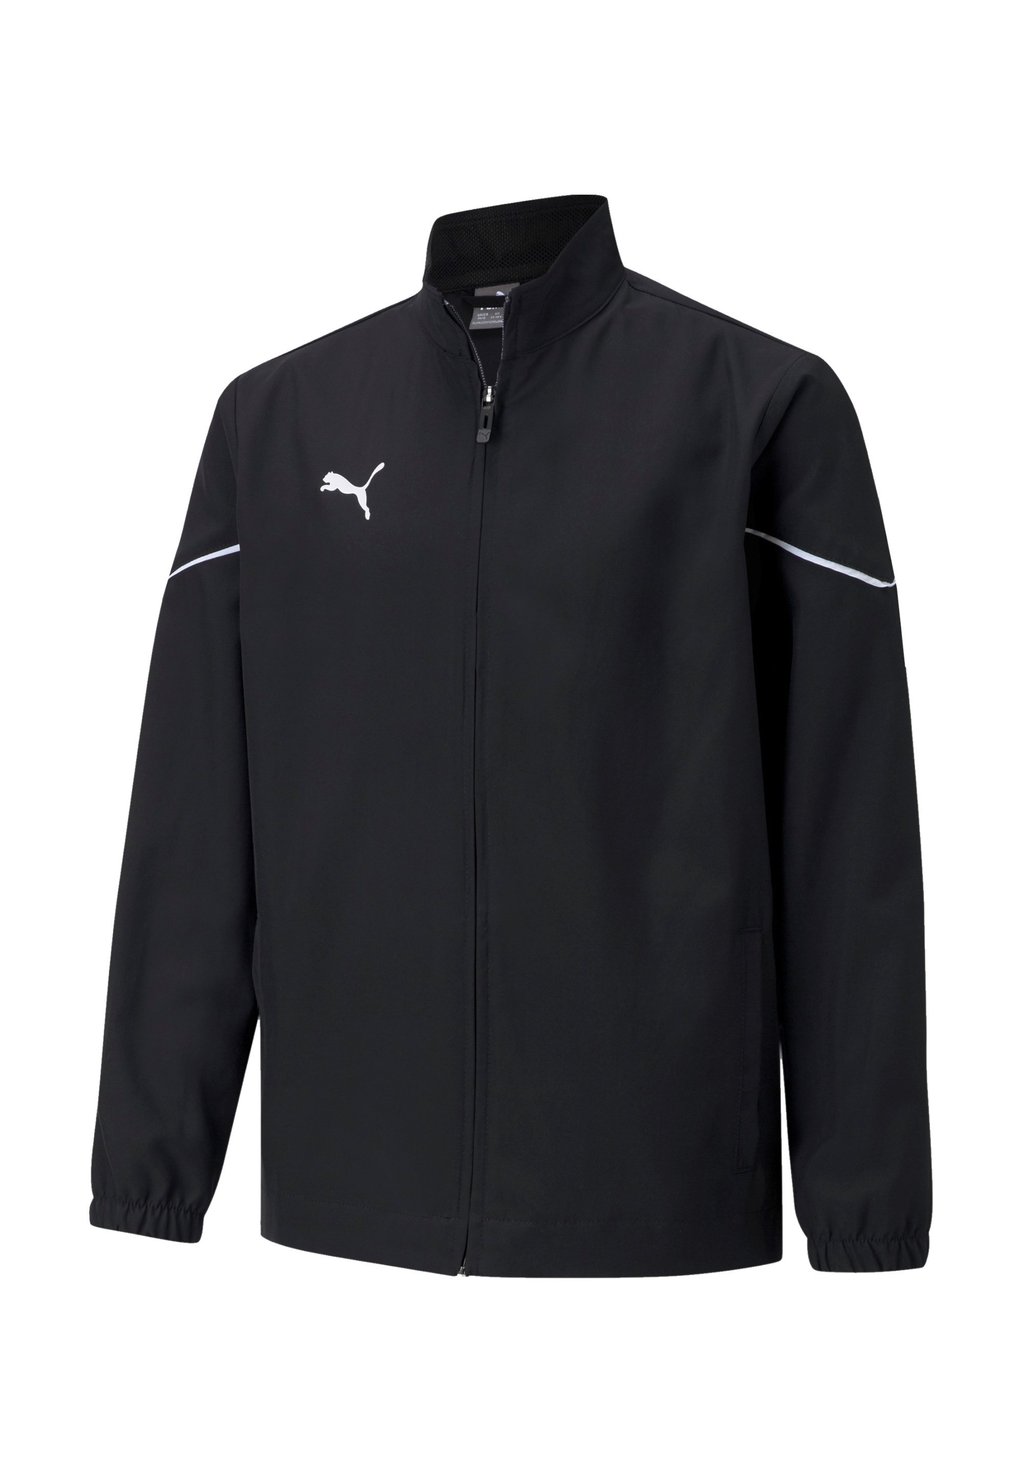 Тренировочная куртка FUSSBALL TEAMSPORT TEAMRISE SIDELINE SJ Puma, цвет schwarzweiss футболка базовая teamsport nike цвет schwarzweiss